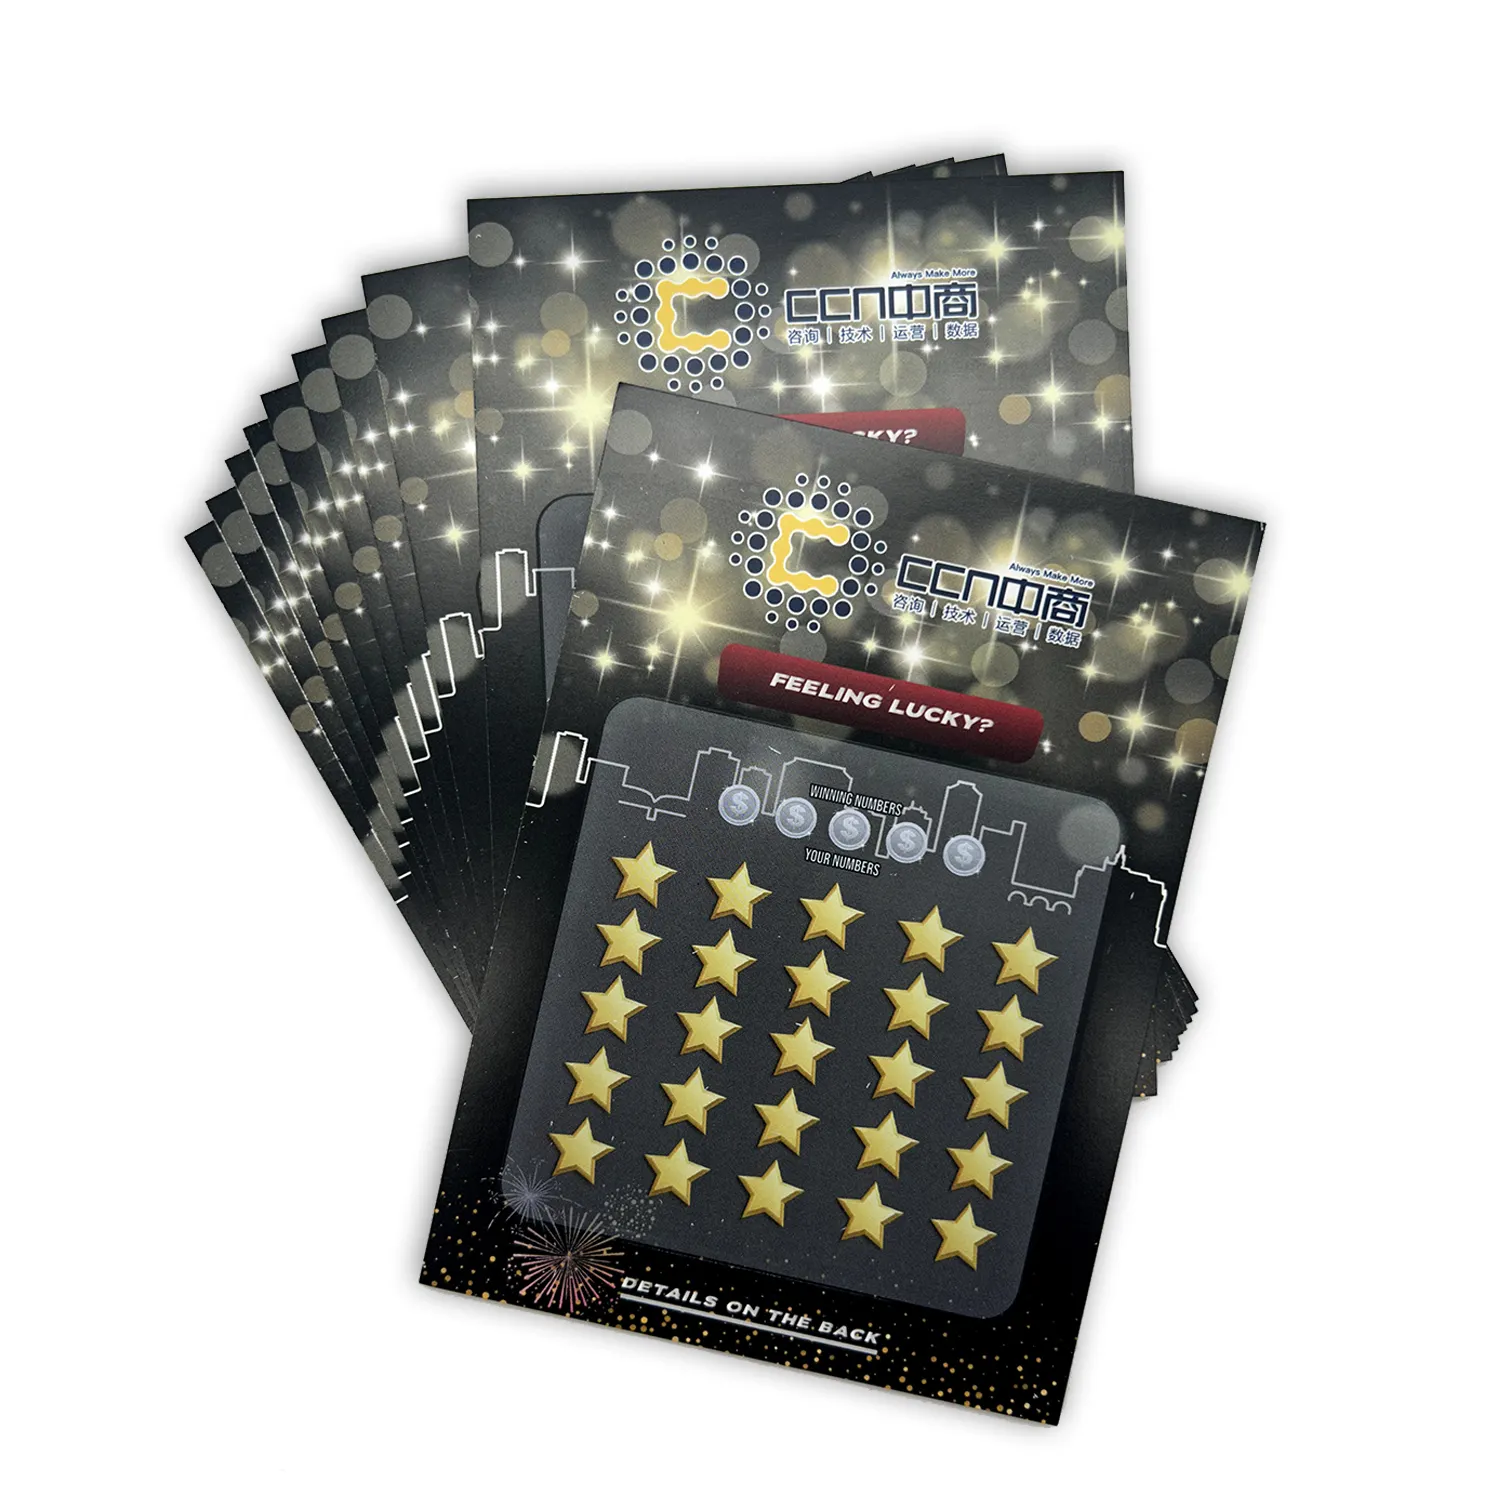 नई शैली की बिक्री स्क्रैच ऑफ पेपर फोन कार्ड प्रिंटिंग कस्टम स्क्रैच ऑफ कार्ड लॉटरी